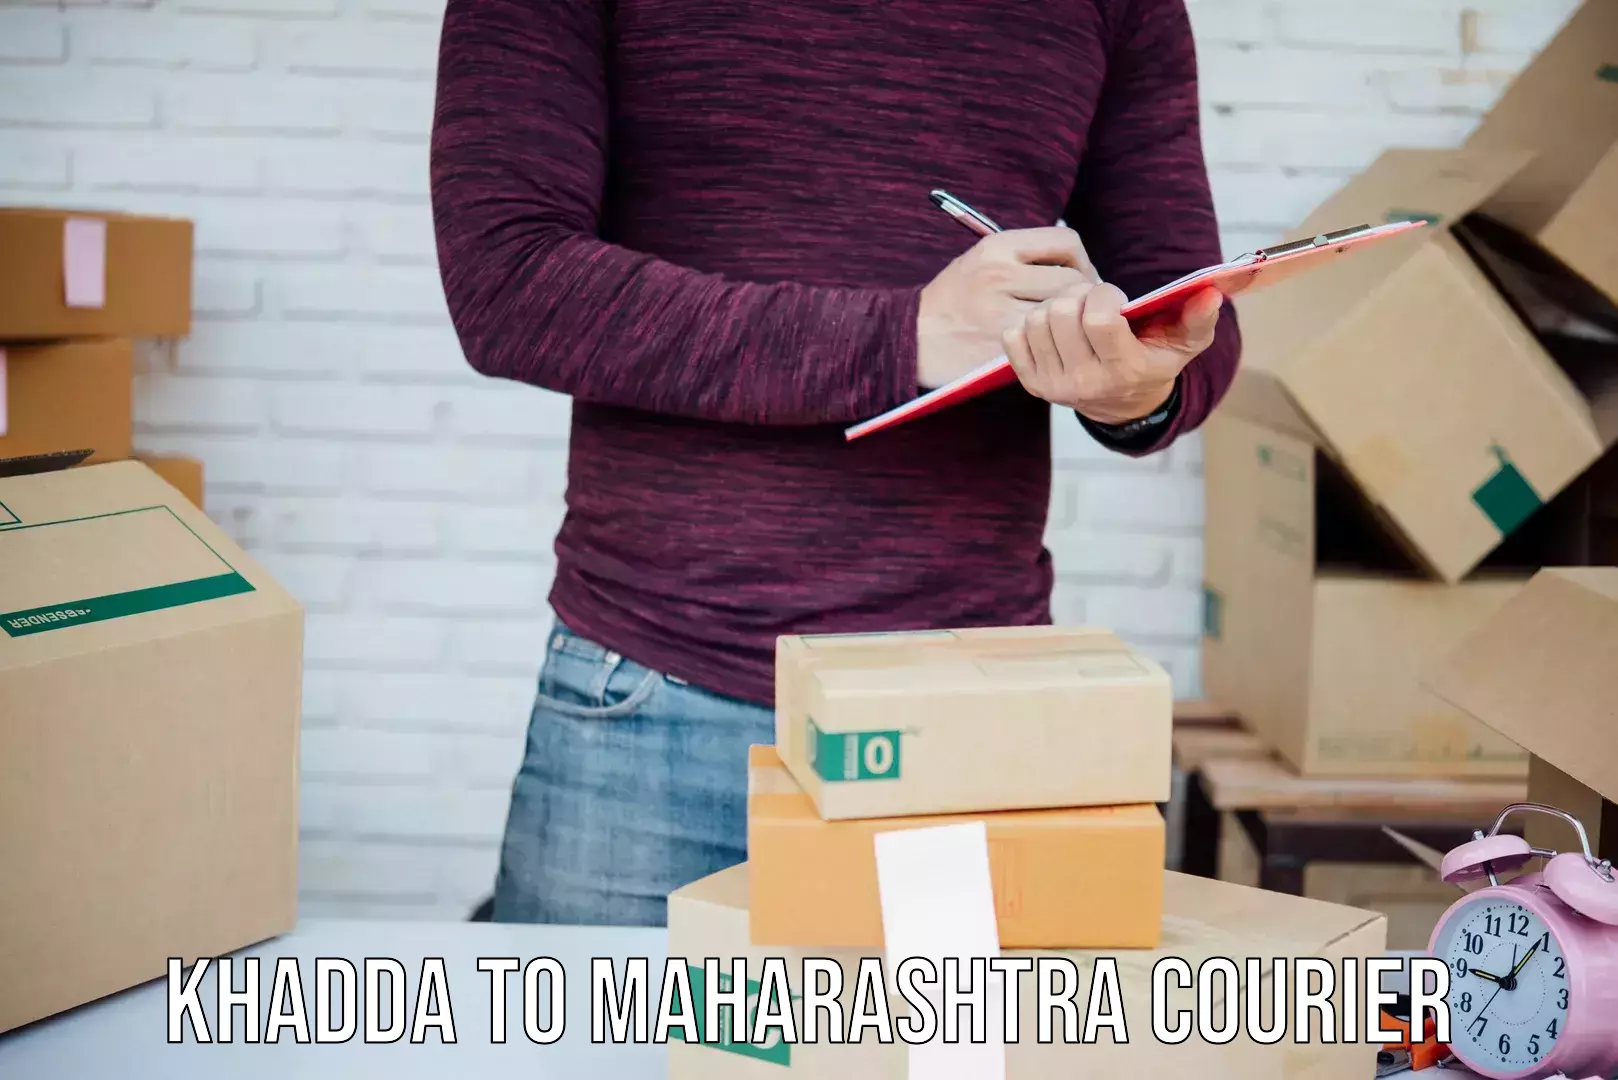 Heavyweight shipping Khadda to Raigarh Maharashtra